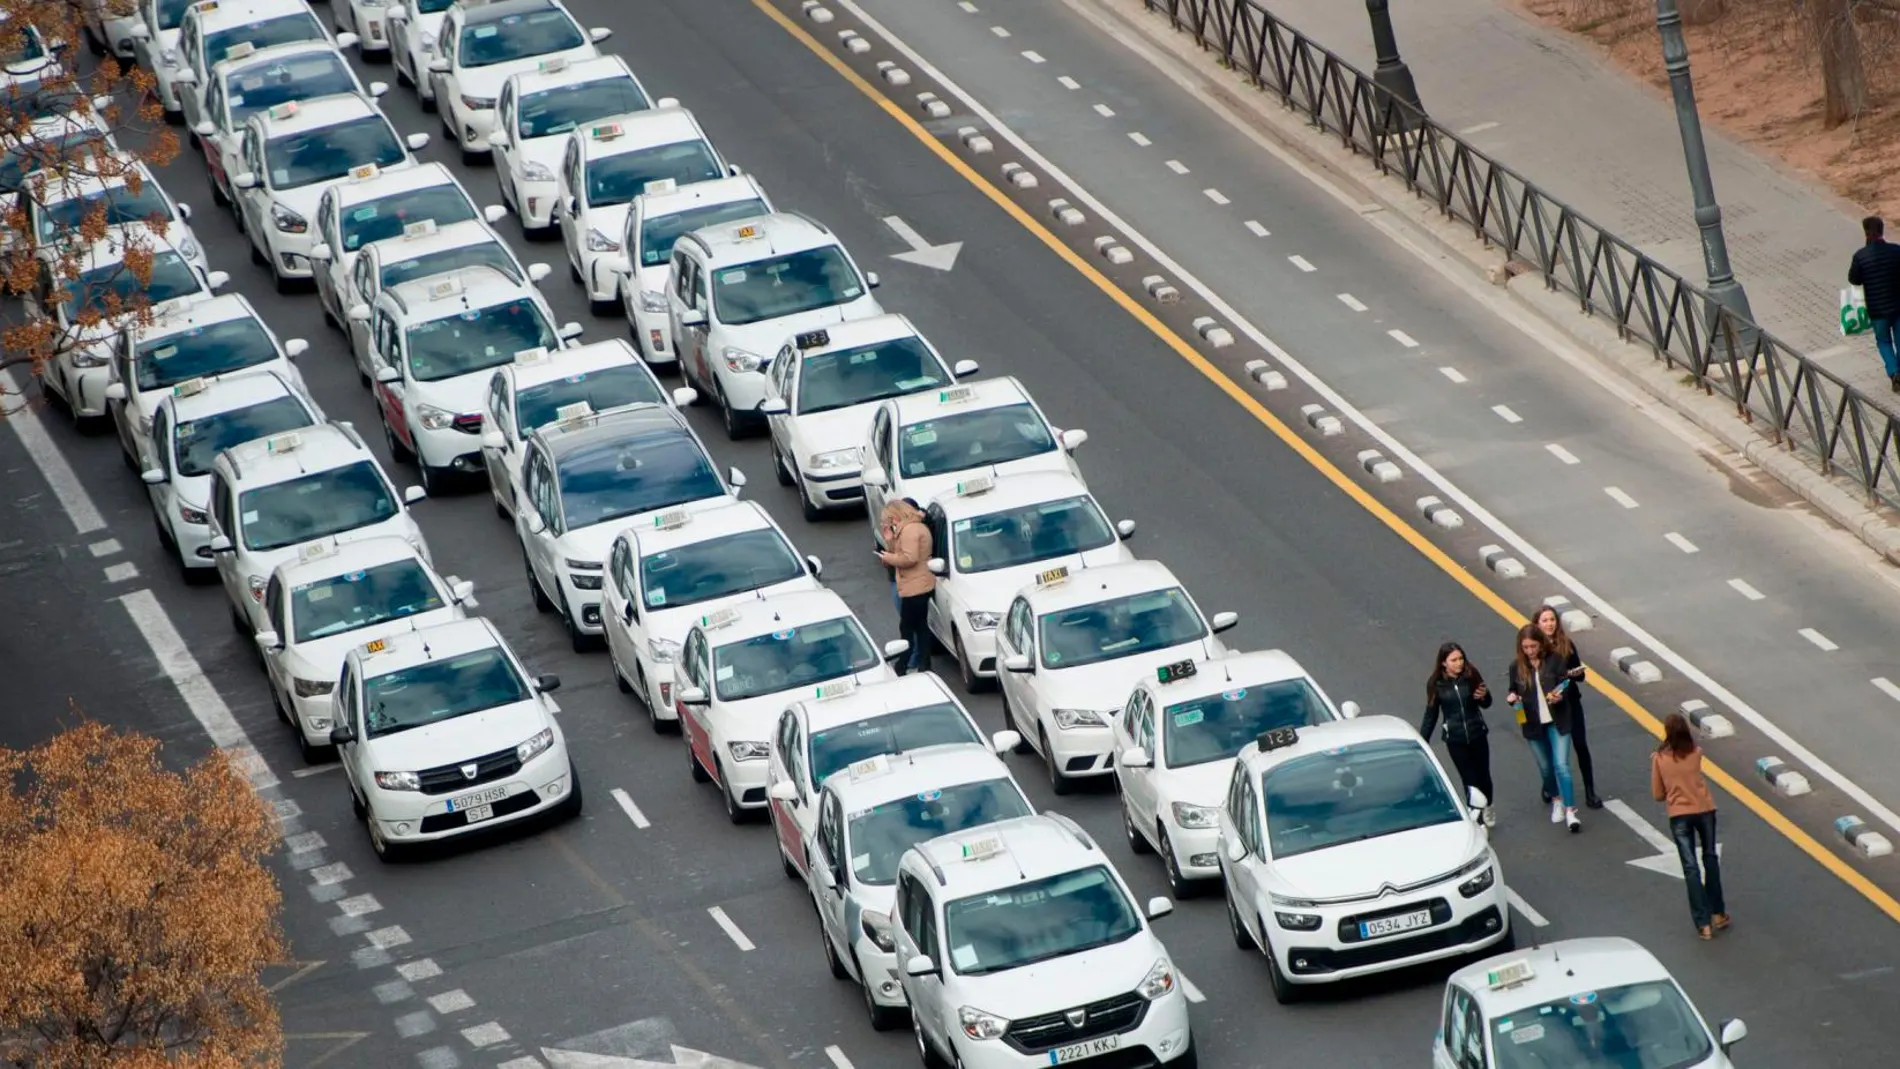 Siete asociaciones de taxistas convocaron ayer una protesta en defensa del sector, con una cola de vehículos aparcados desde la calle Pintor López hasta la calle Xàtiva y una marcha a pie hasta el Palau de la Generalitat